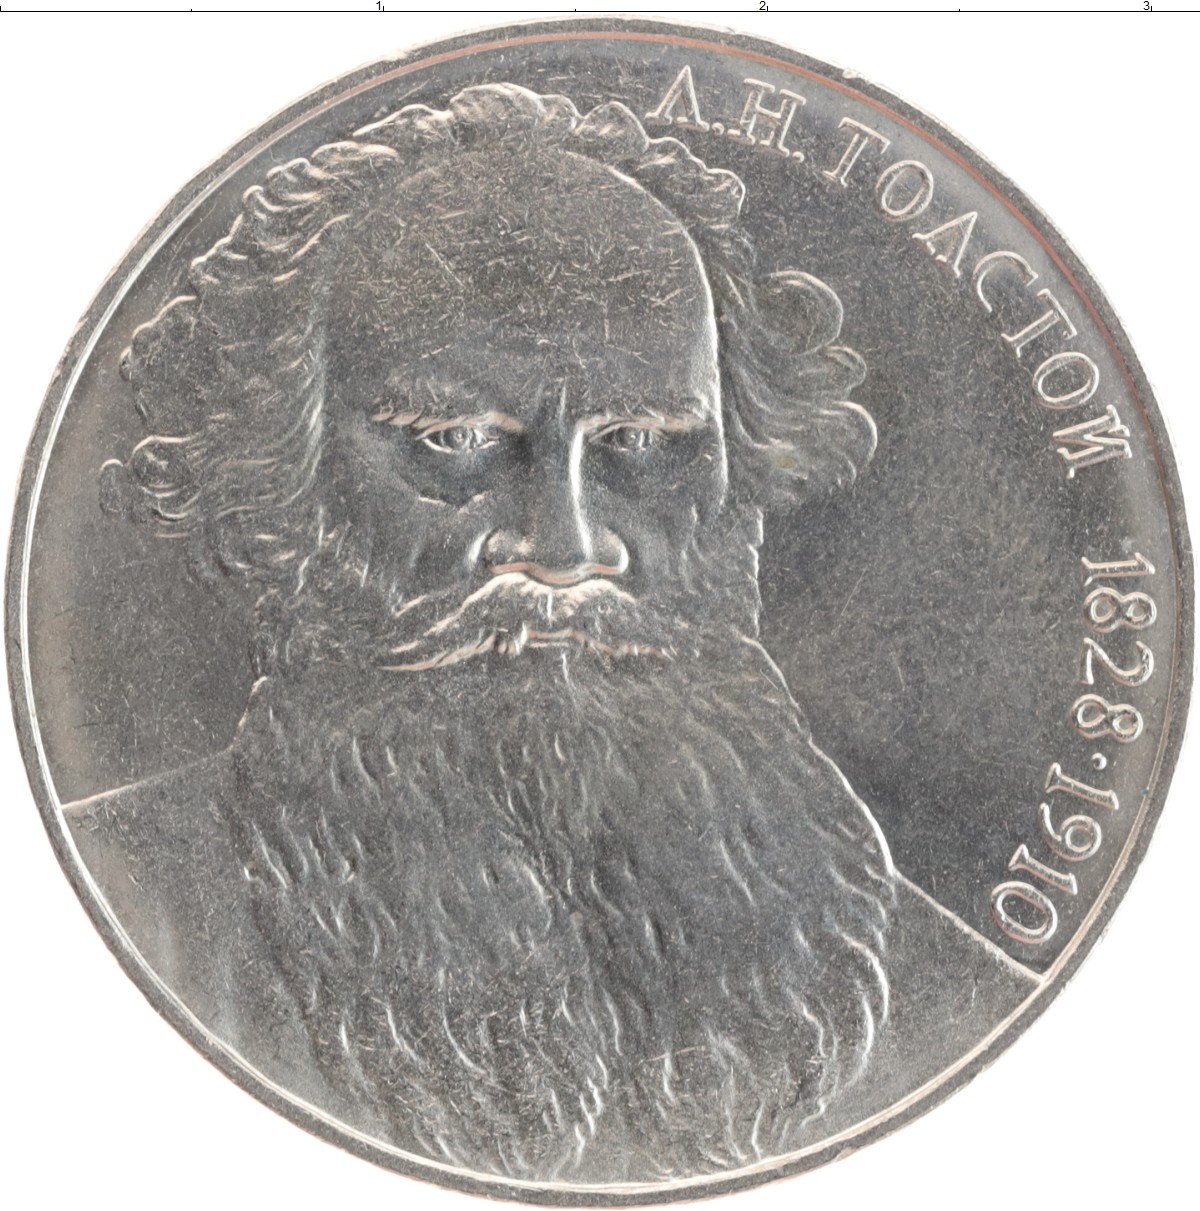 1 рубль 80 года. Монета 1 рубль 1965 UNC. 1 Рубль UNC. Металлические рубли СССР. 1 Рубль 1988 UNC.